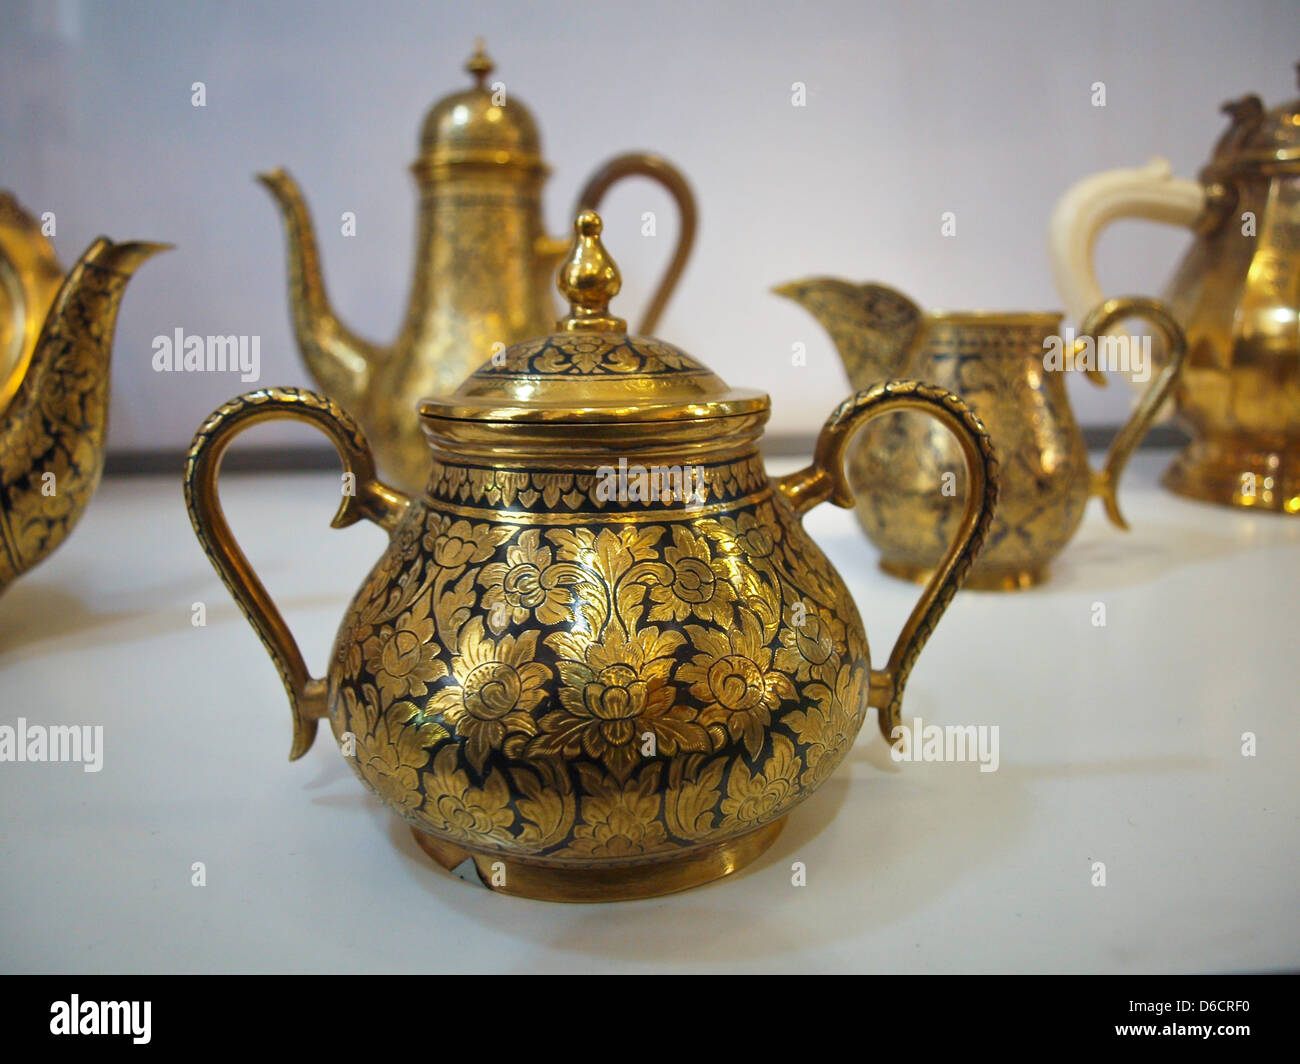 Alte goldene Teekanne mit orientalischen ornament Stockfotografie - Alamy